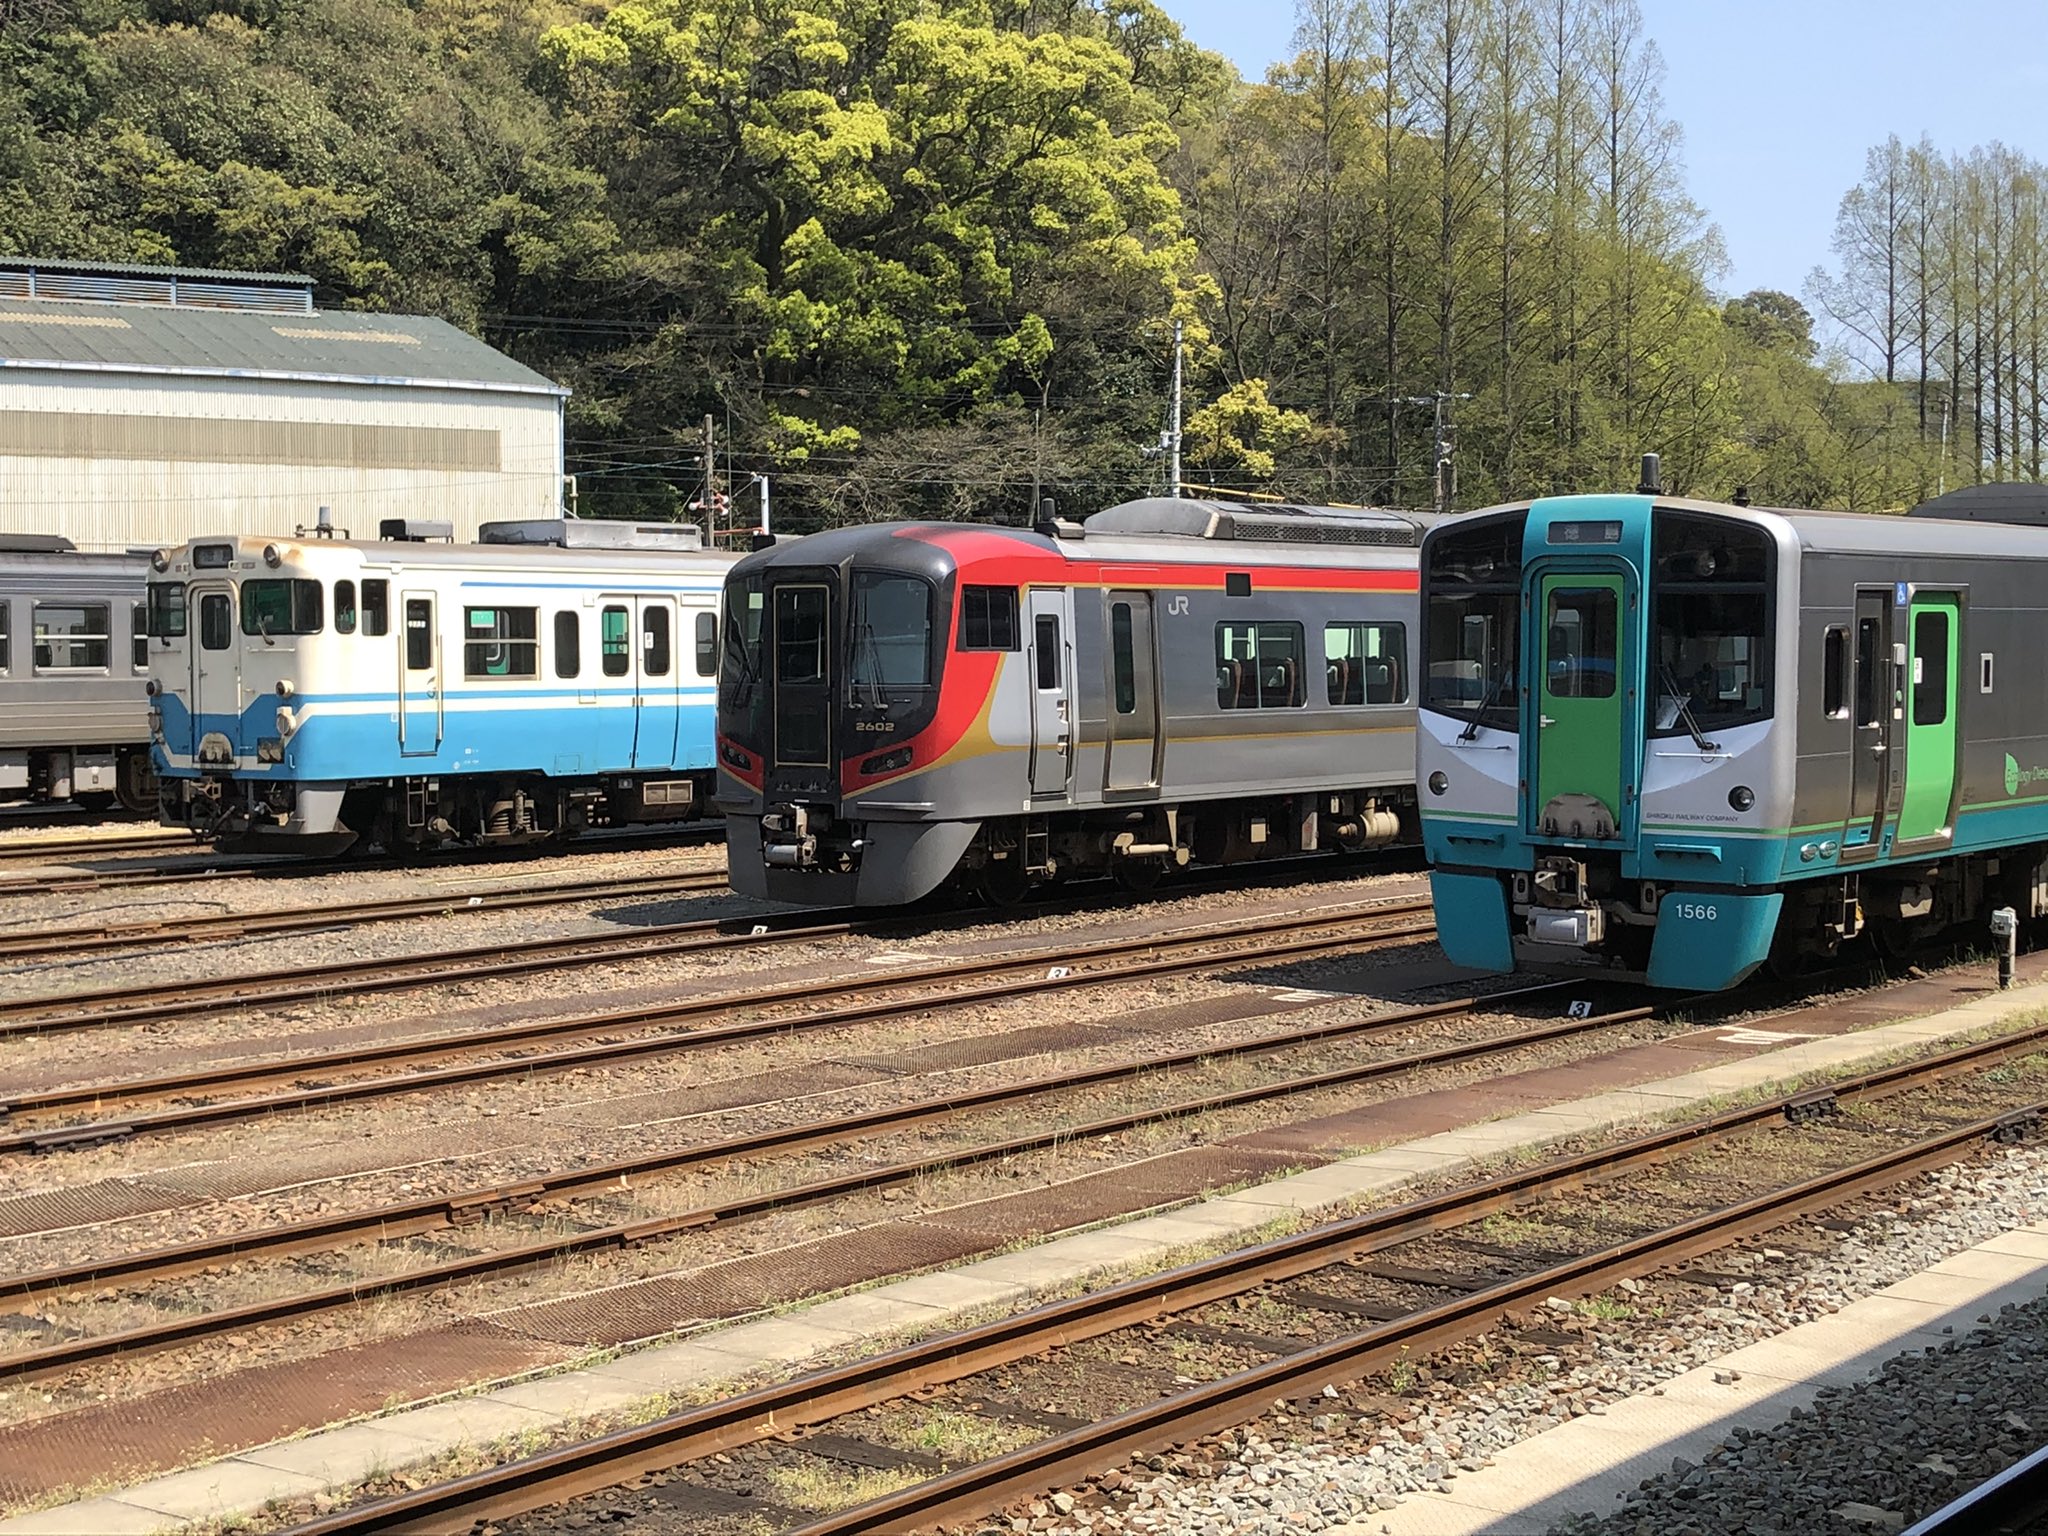 ししゃもねこ 公式 徳島は 日本で唯一電車が走っていない県ですにゃ 汽車ですにゃ 汽車 蒸気機関車じゃないにゃ ディーゼル車 1両で走る汽車を見たら和みますにゃ T Co E5fdif4nkv Twitter